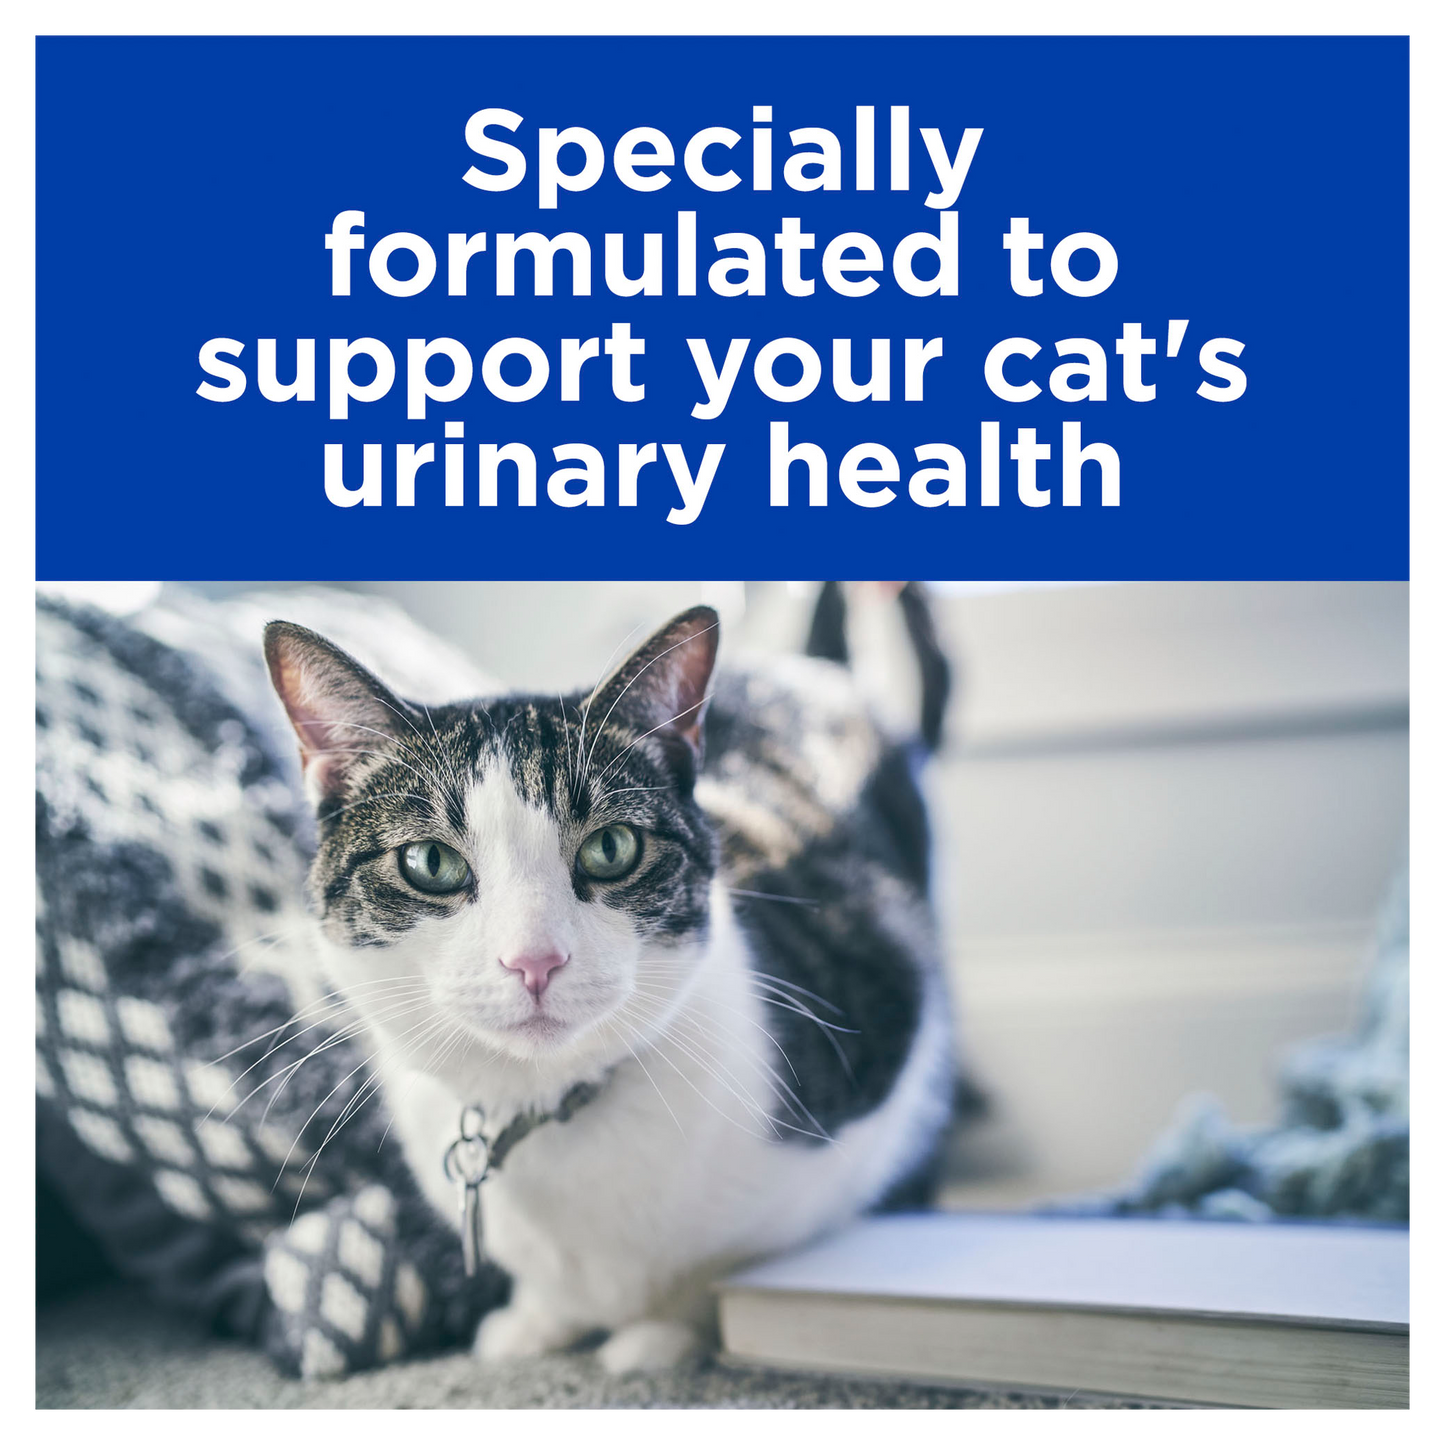 Hill's Prescription Diet Urinary Care C/D Multicare 12x 85g Pouch - Cat Food